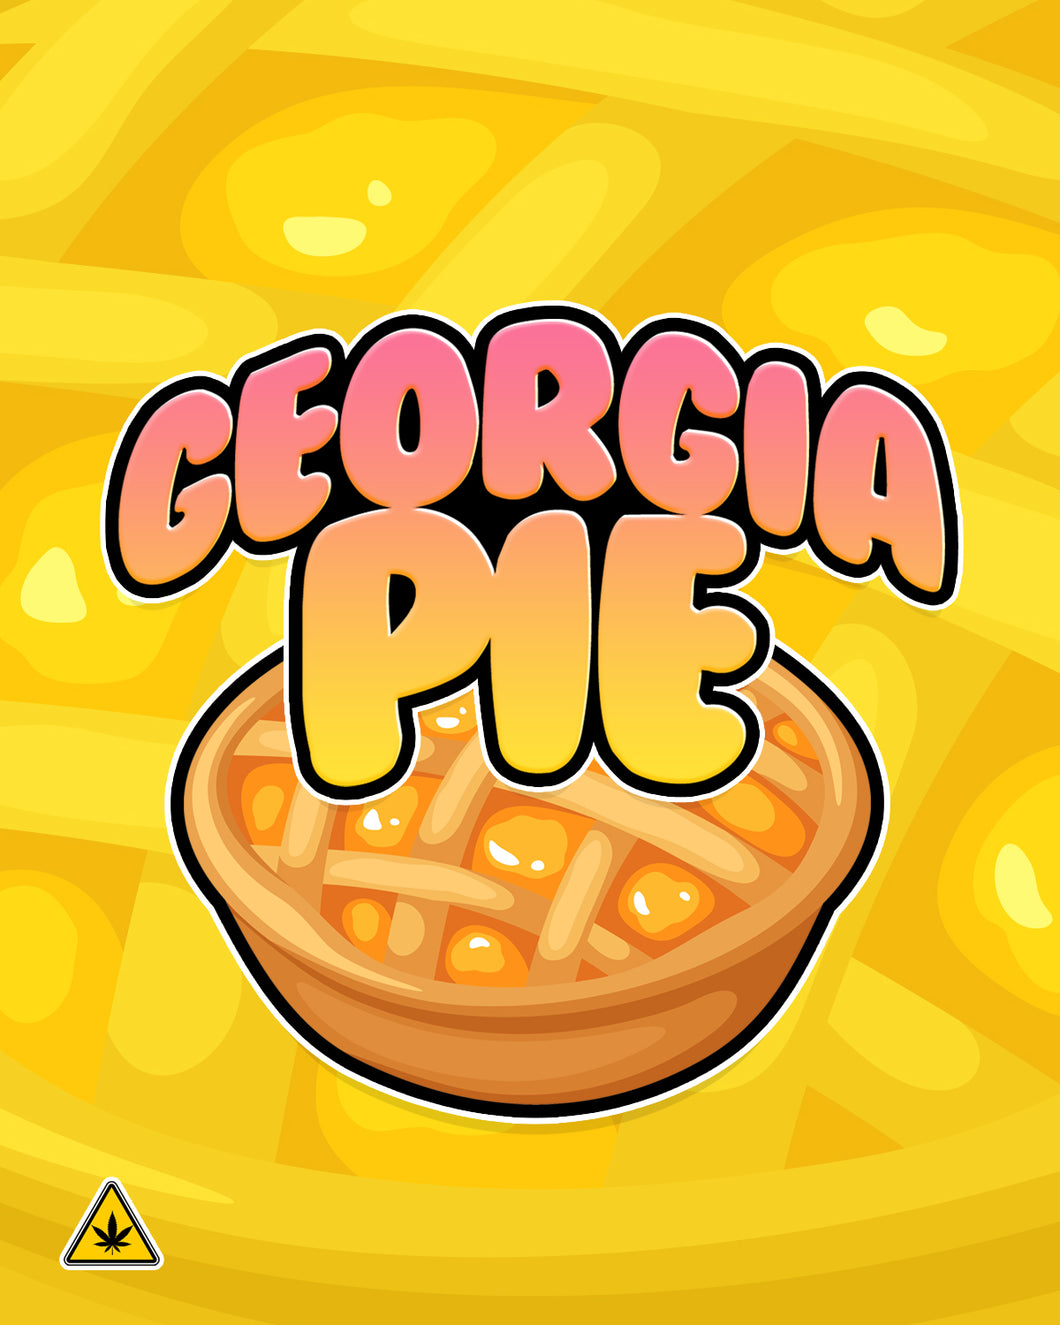 Georgia Pie